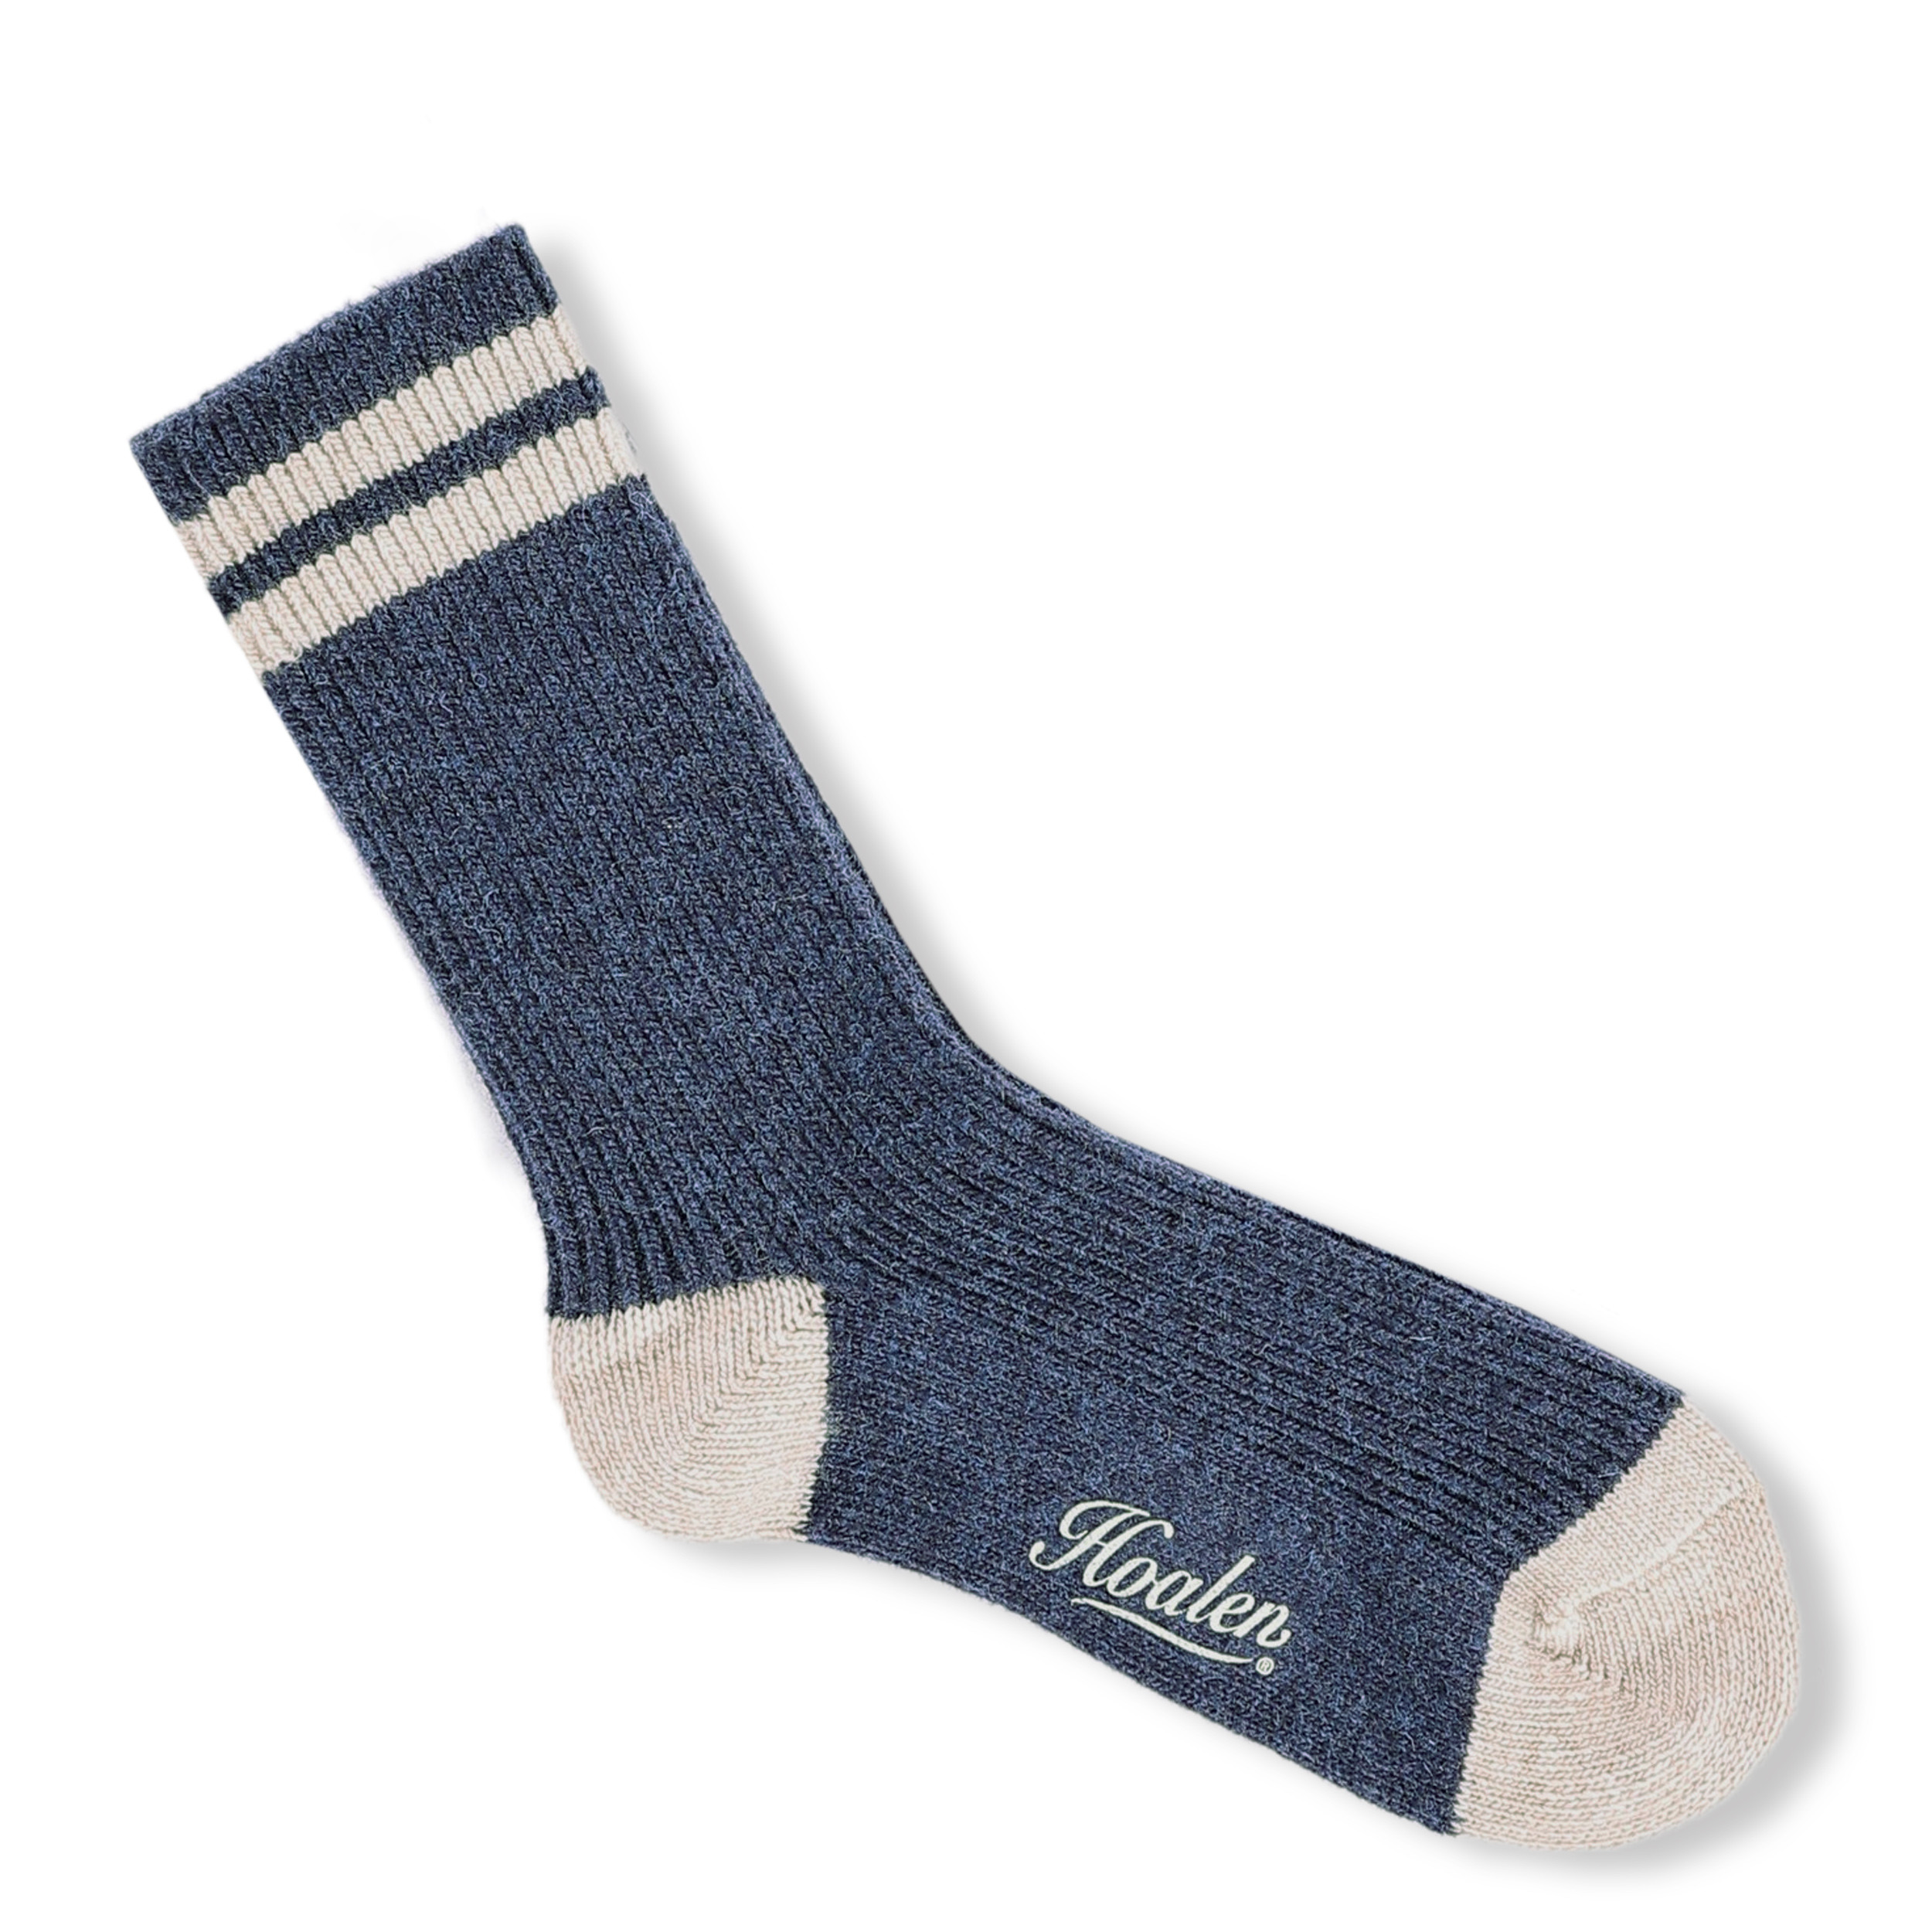 Half-high socks Socks